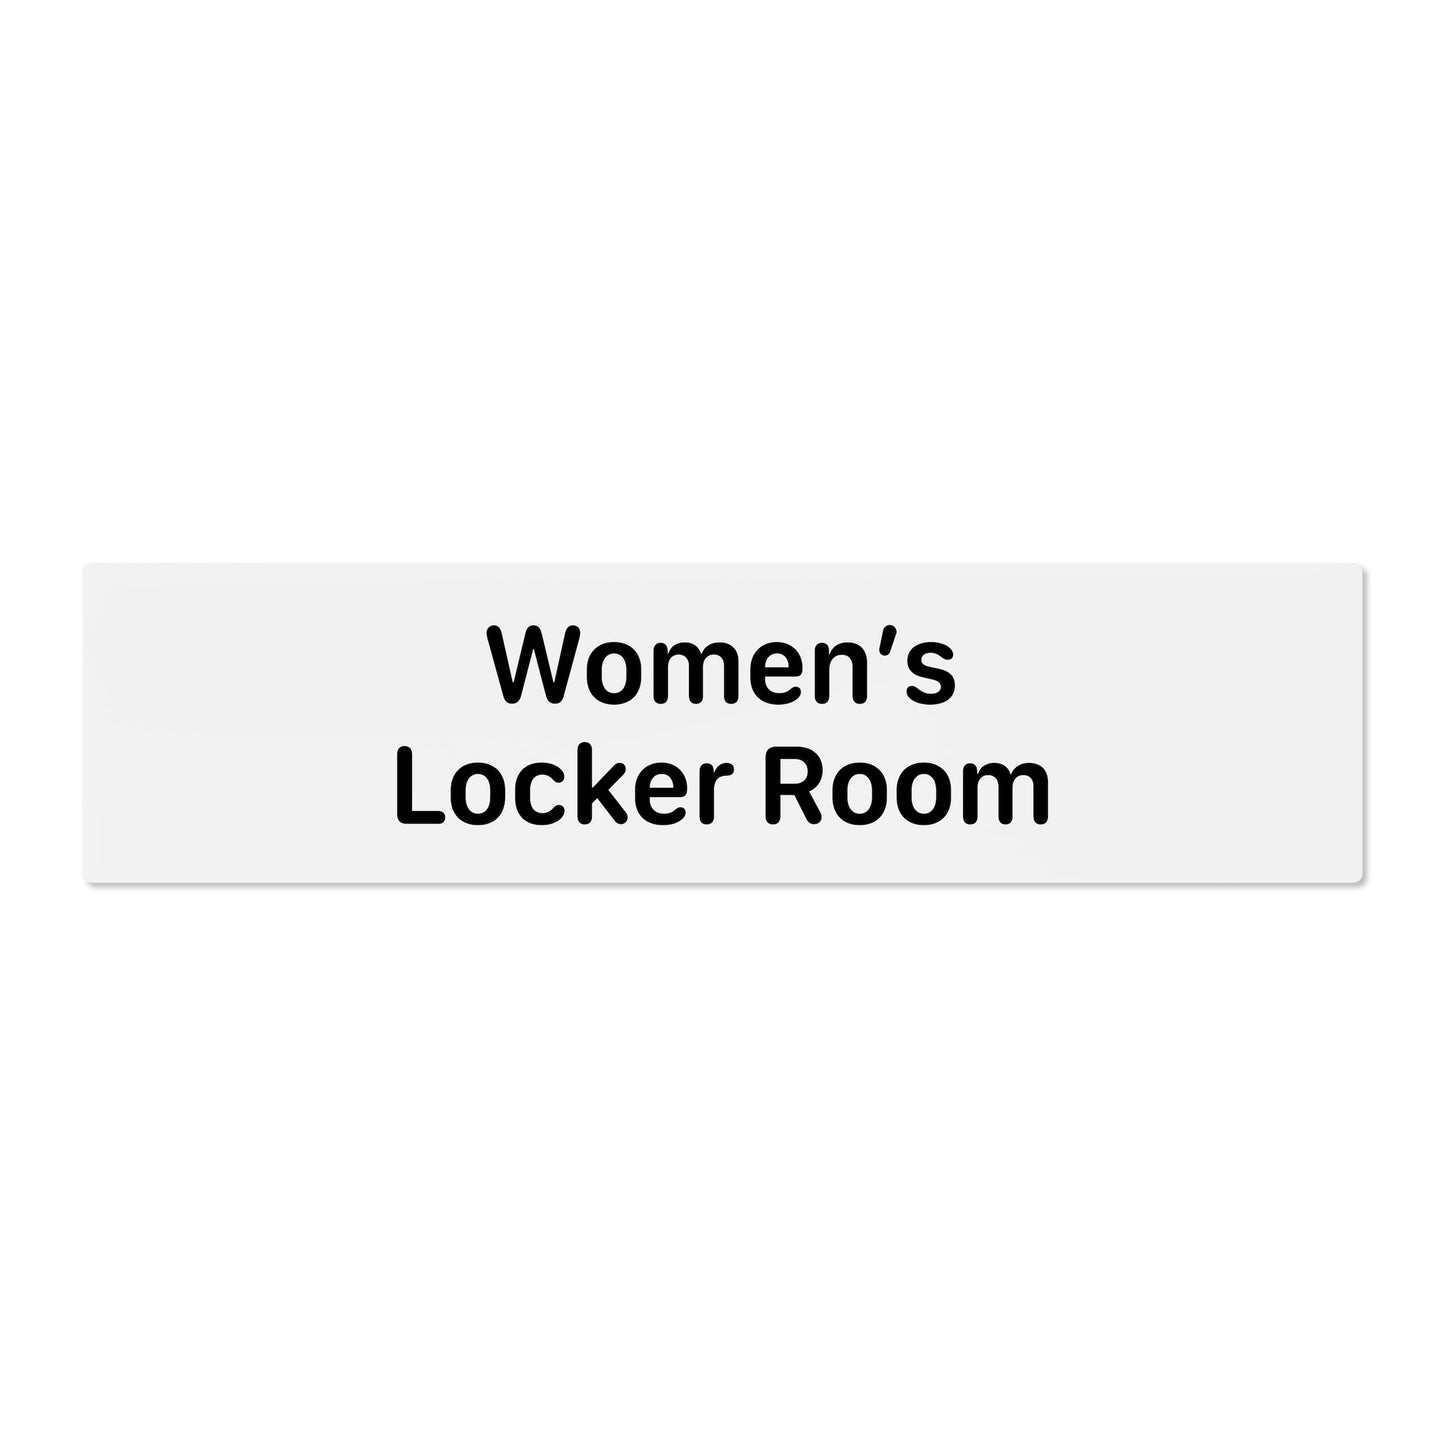 Women’s Locker Room